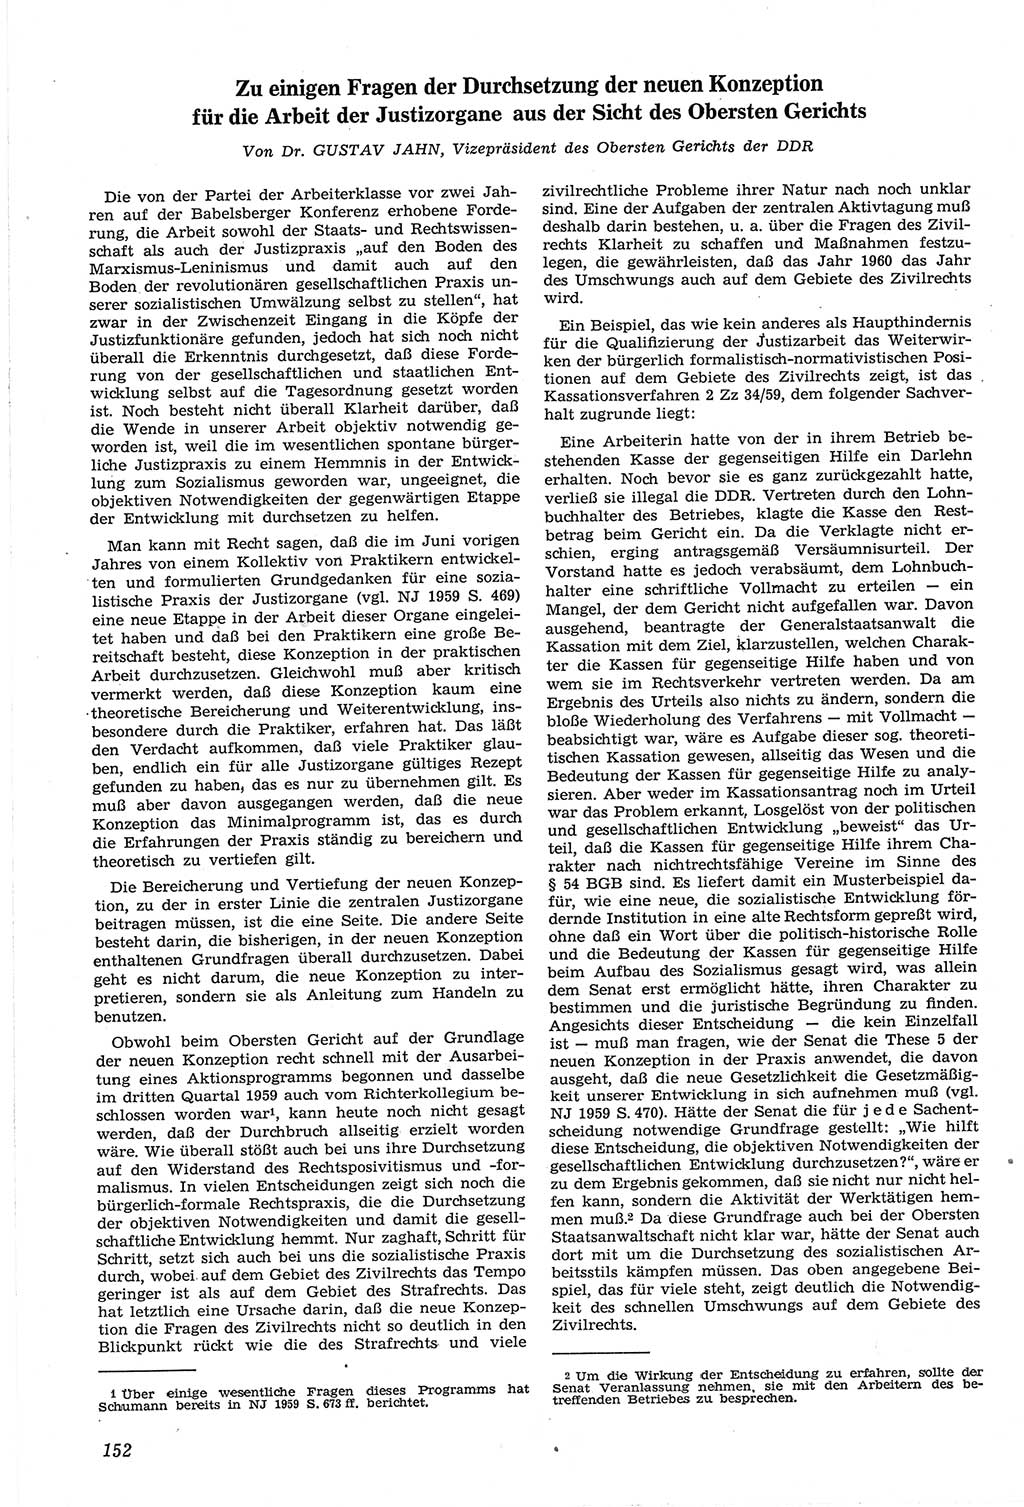 Neue Justiz (NJ), Zeitschrift für Recht und Rechtswissenschaft [Deutsche Demokratische Republik (DDR)], 14. Jahrgang 1960, Seite 152 (NJ DDR 1960, S. 152)